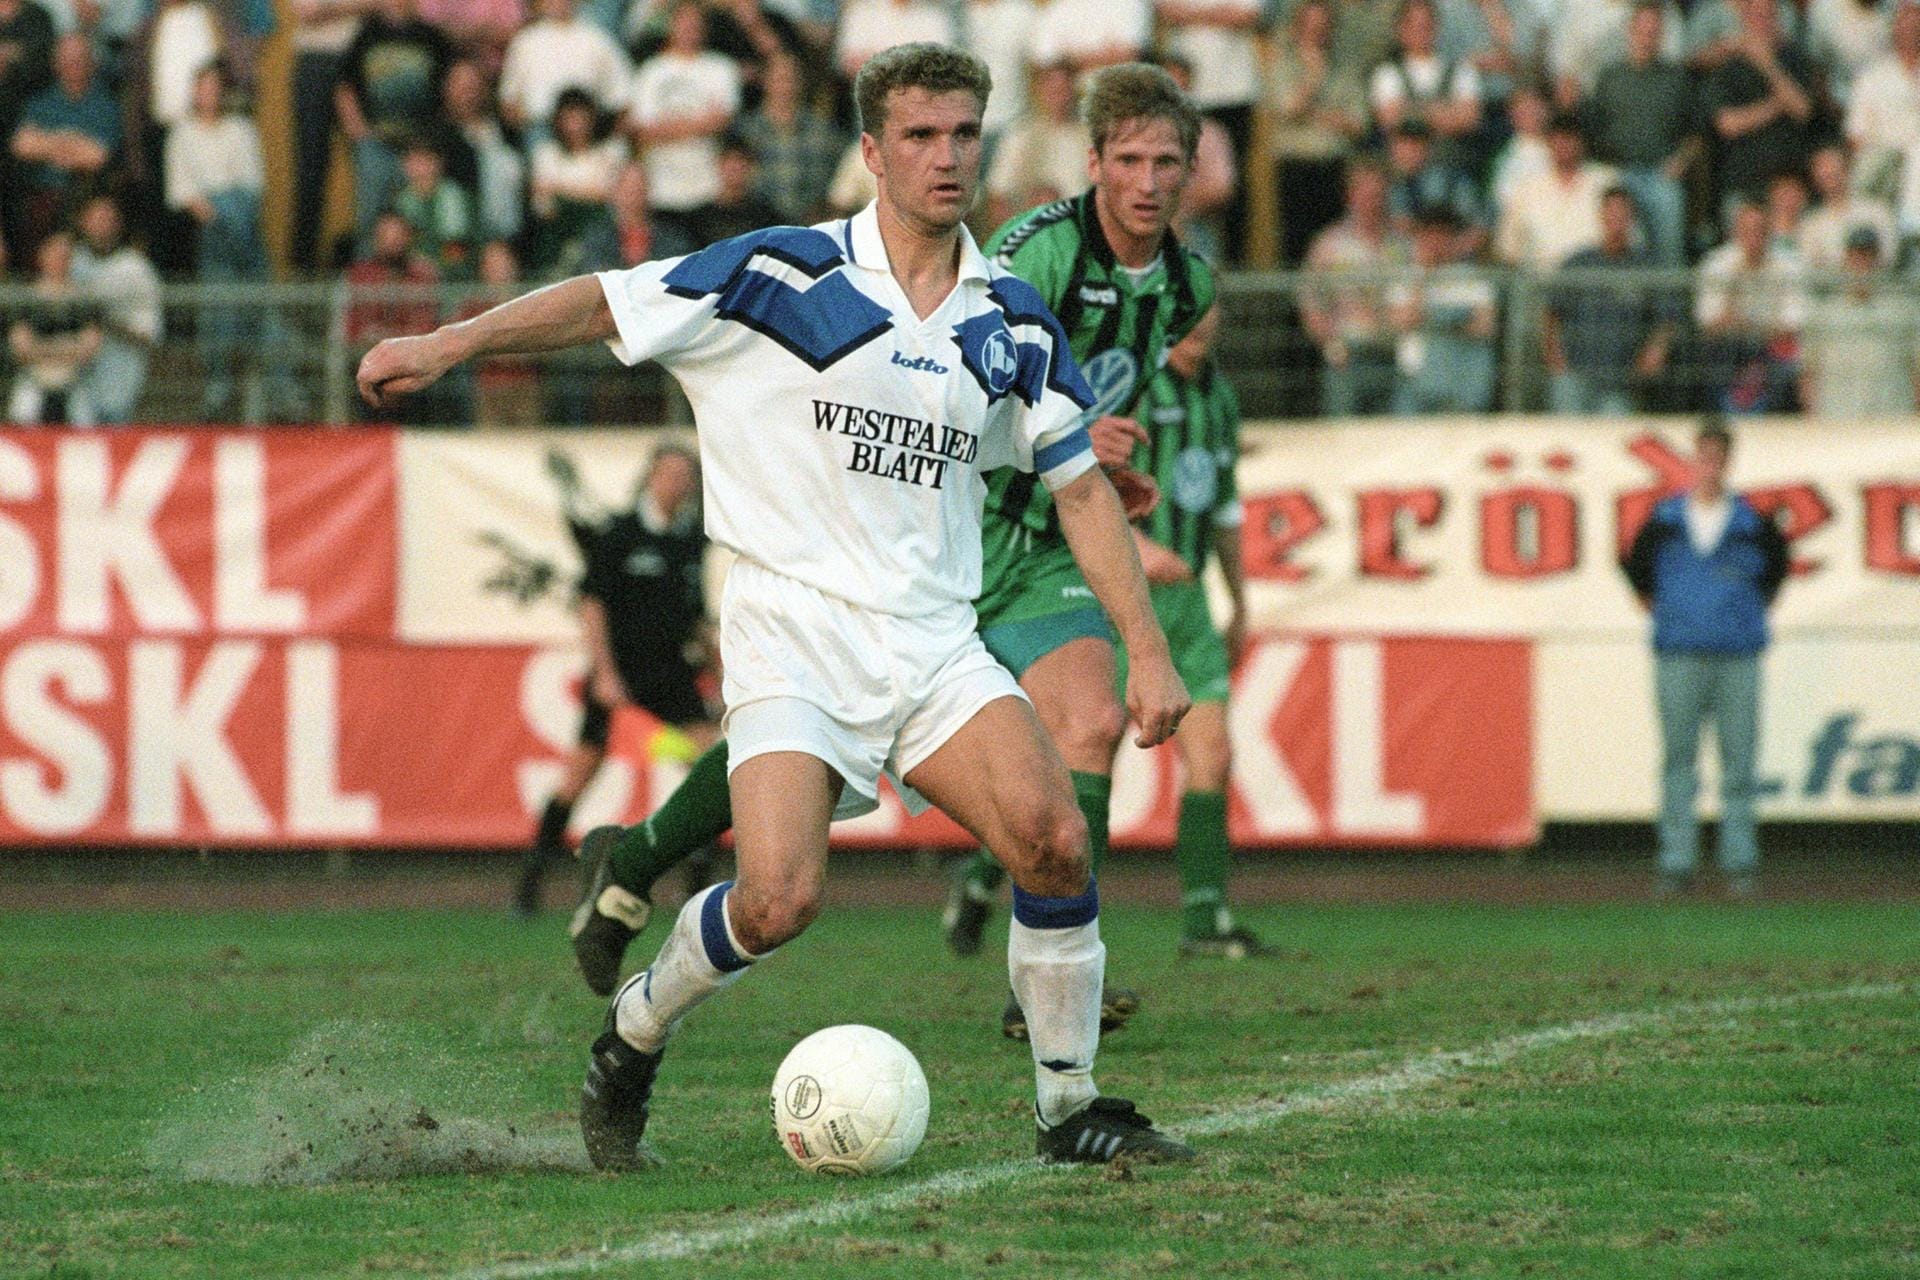 Thomas von Heesen (1994-1997) – Nach 14 erfolgreichen Jahren beim HSV, kehrte von Heesen 1994 zurück in seine Heimat. Mit ihm stieg die Arminia in drei Jahren aus der damals drittklassigen Regionalliga in die Bundesliga auf und hielt dort die Klasse. 1997 beendete er seine Spielerkarriere und wurde Teammanager bei der Arminia, die er im Laufe der Jahre drei Mal als Trainer betreute. Seit 2018 ist von Heesen sportlicher Berater des Vorstands des Hamburger SV.